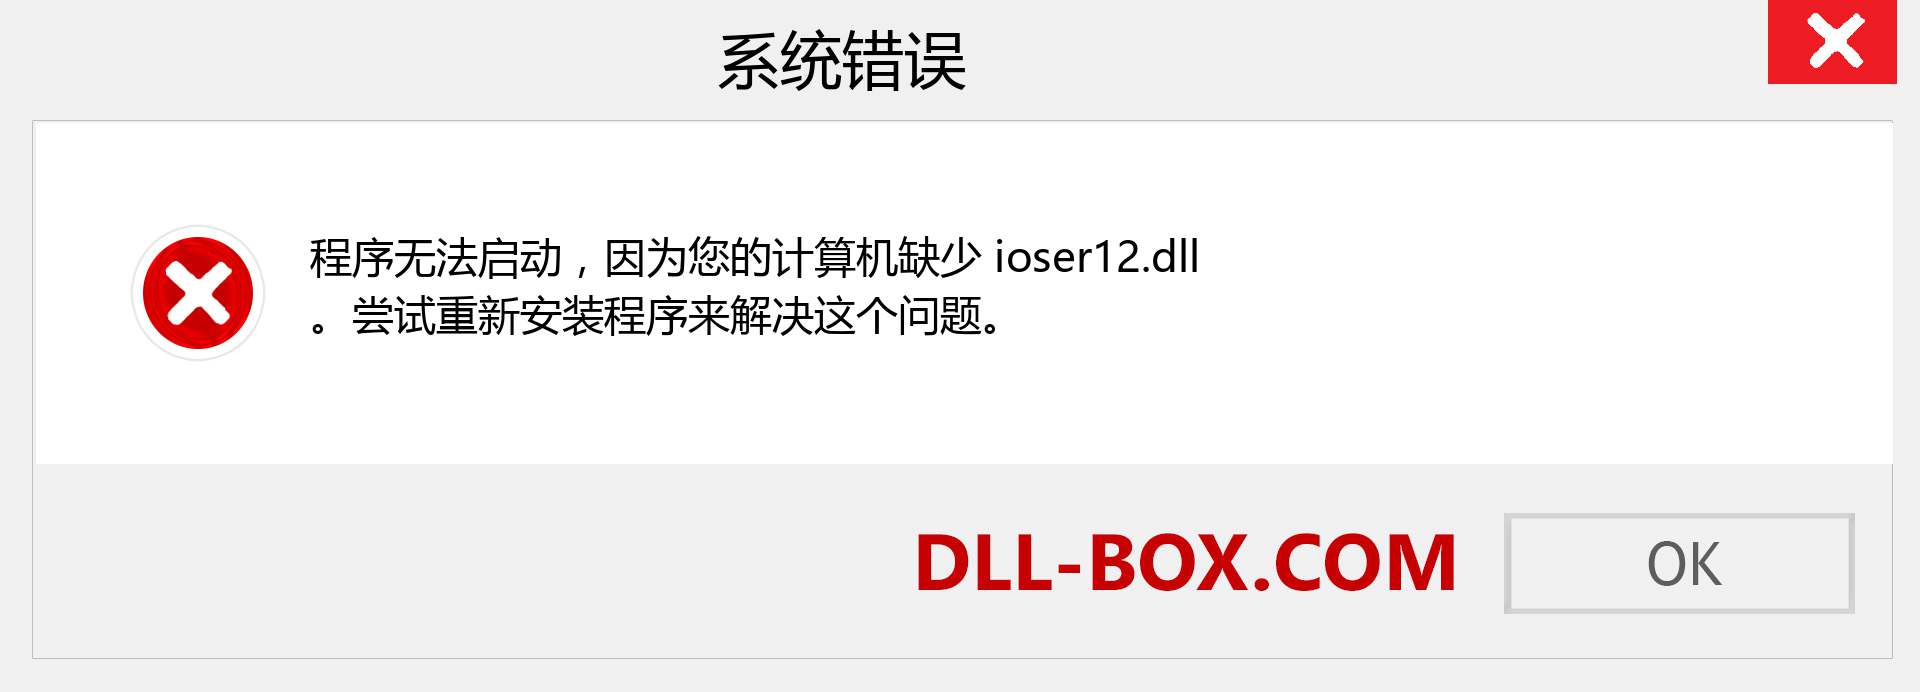 ioser12.dll 文件丢失？。 适用于 Windows 7、8、10 的下载 - 修复 Windows、照片、图像上的 ioser12 dll 丢失错误